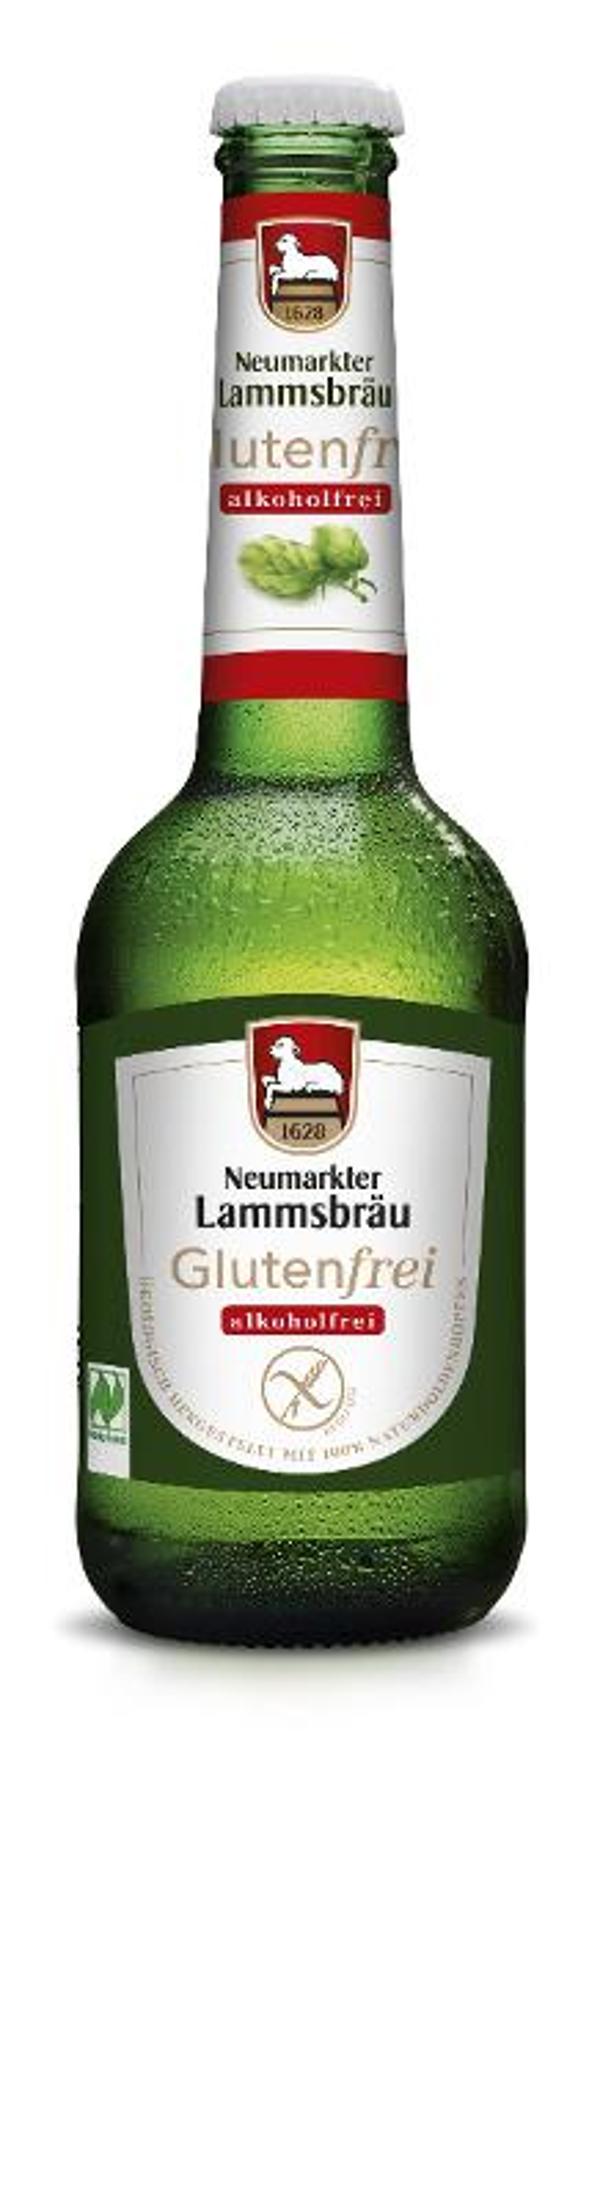 Produktfoto zu Lammsbräu glutenfrei-alkoholfrei